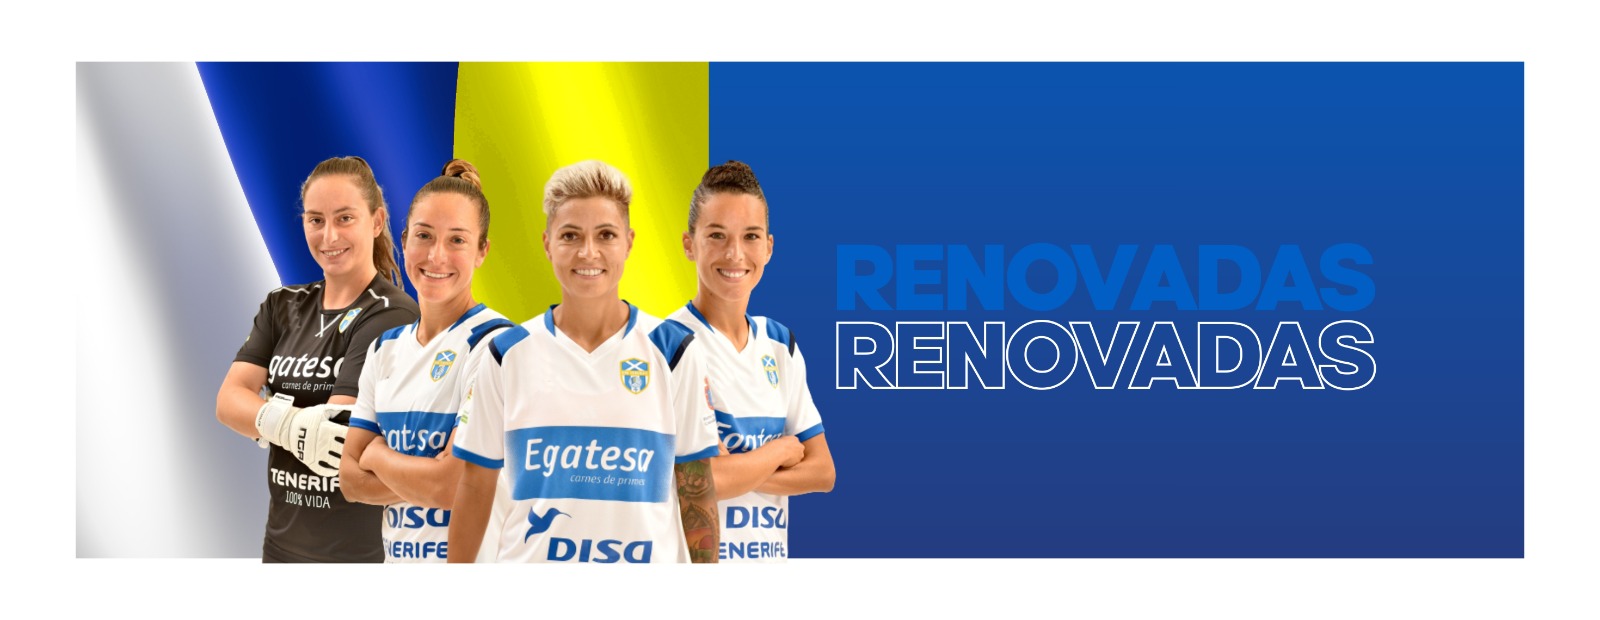 La UDG Tenerife renueva a cuatro futbolistas históricas